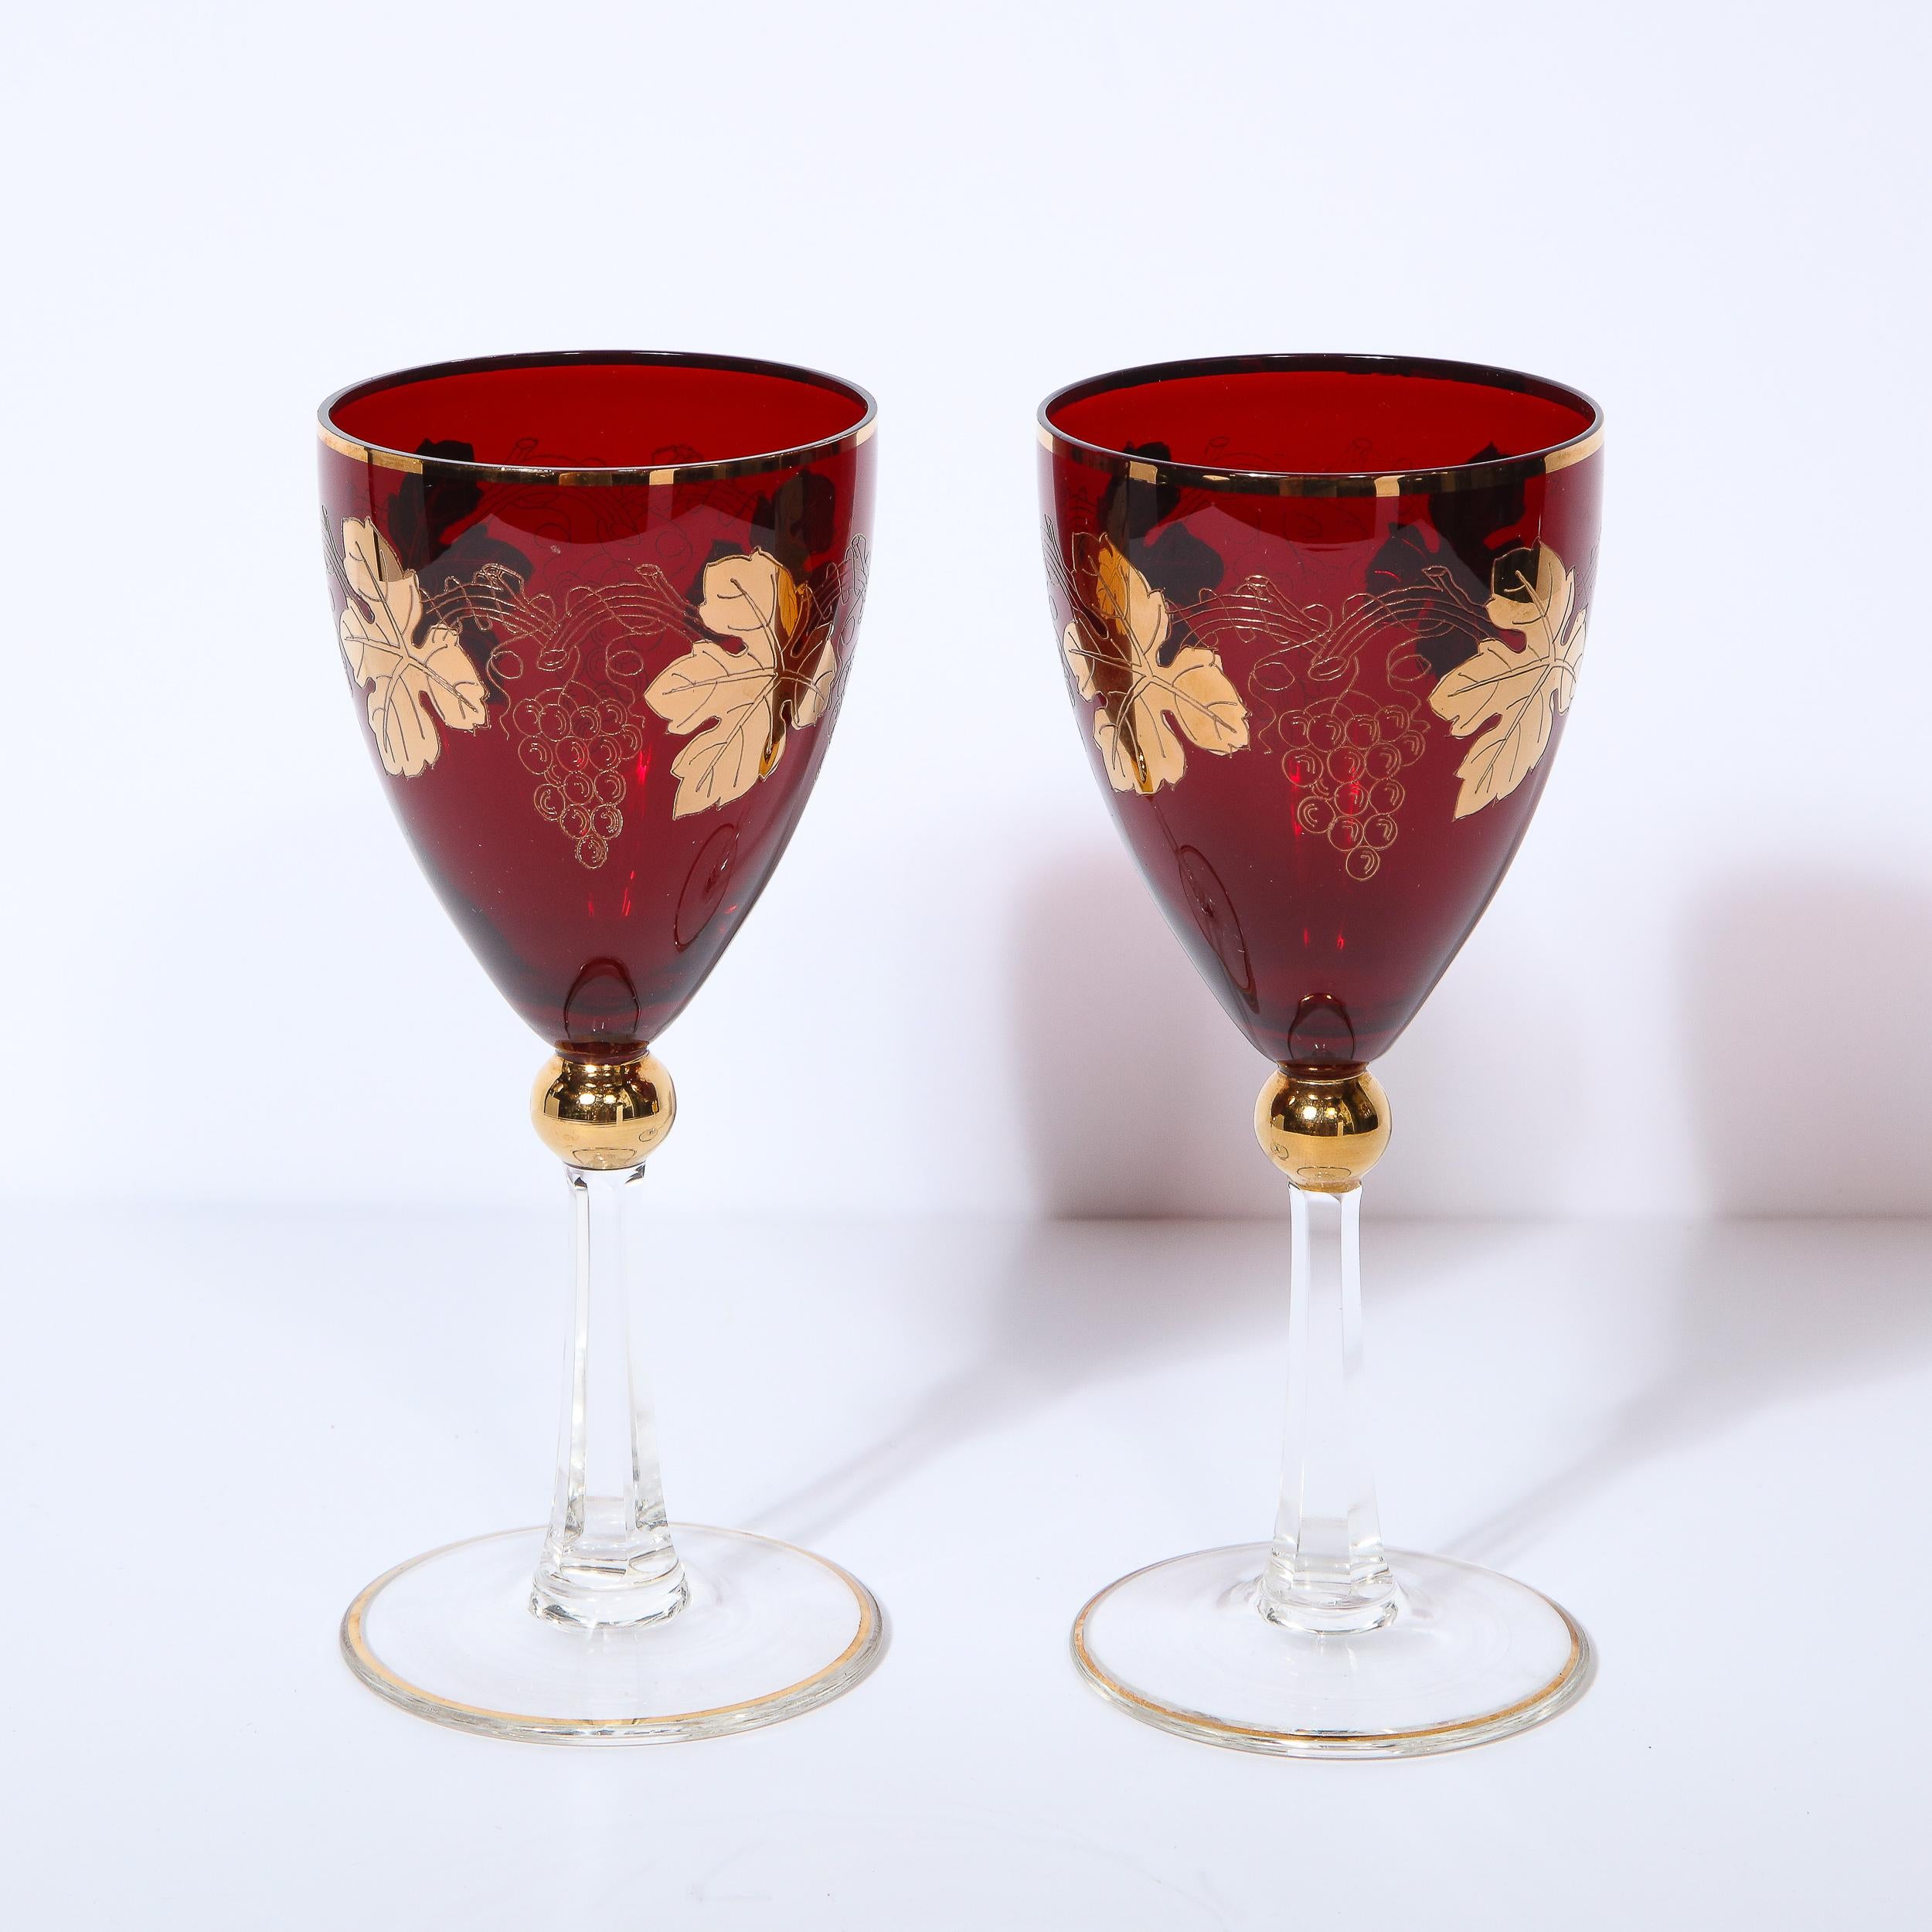 Dieser atemberaubende Satz von acht Art Deco Weingläsern wurde um 1940 in den Vereinigten Staaten hergestellt. Sie haben einen runden Sockel und einen facettierten Stiel aus durchscheinendem Glas mit einer kugelförmigen Verzierung, die mit